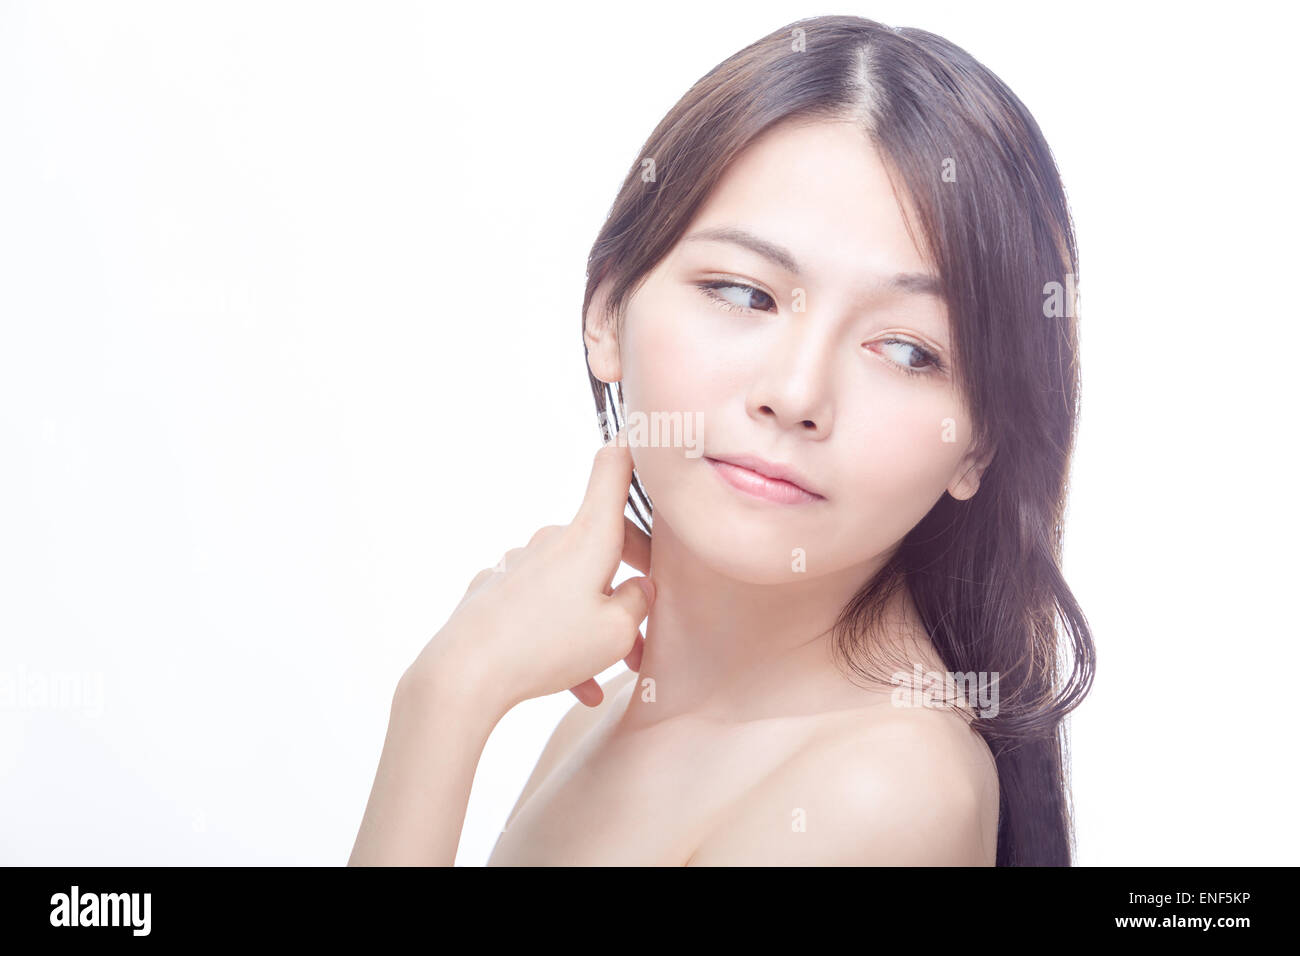 Asiatische Schönheit Porträt des chinesischen Modells mit Hand auf Gesicht Stockfoto